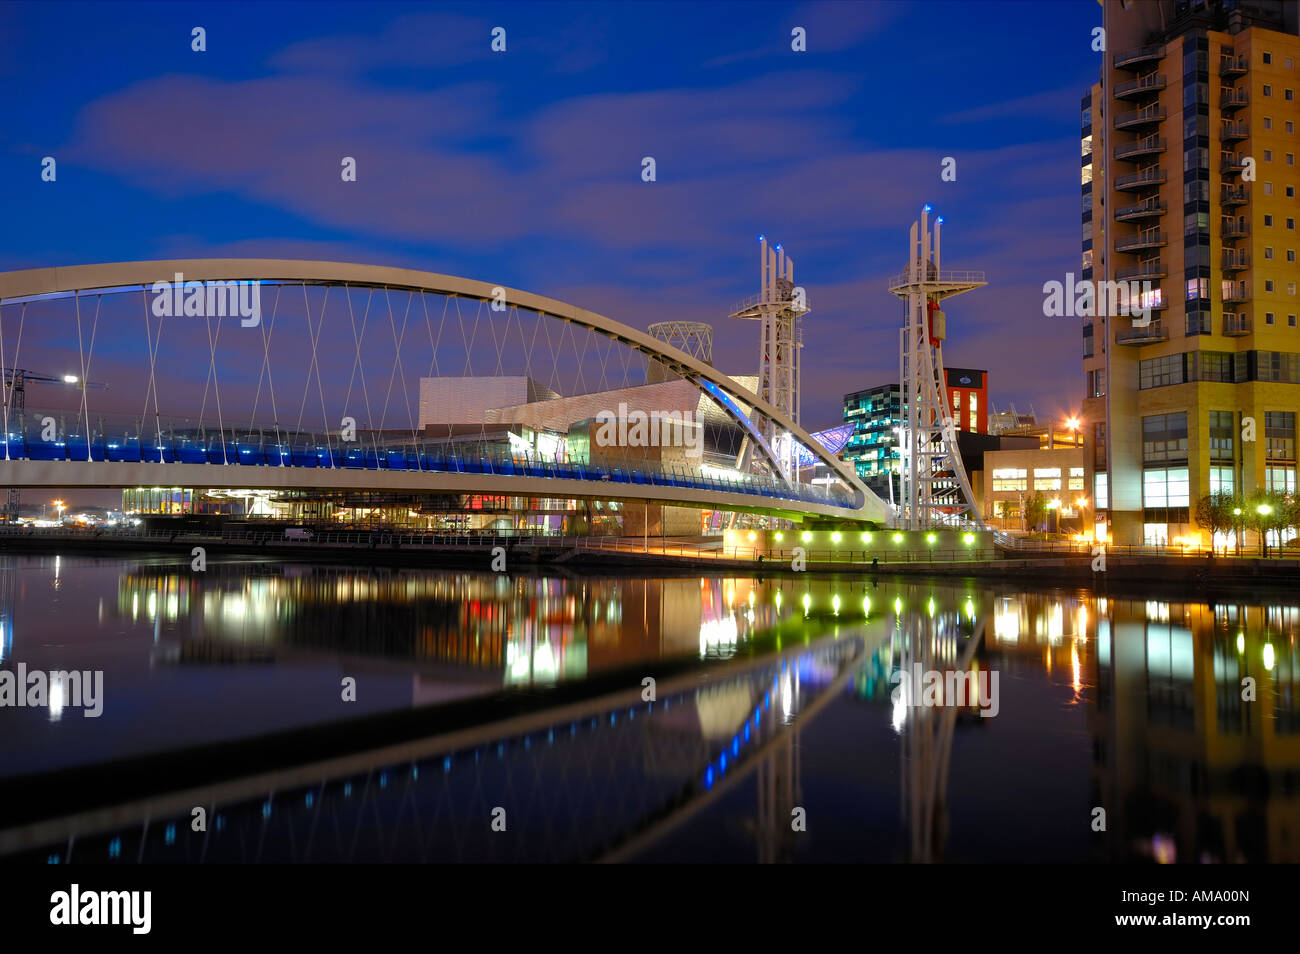 Lowry-Fußgänger-Hängebrücke und Bürohaus Nacht spät Abend Salford Kais Manchester England uk Europa Stockfoto